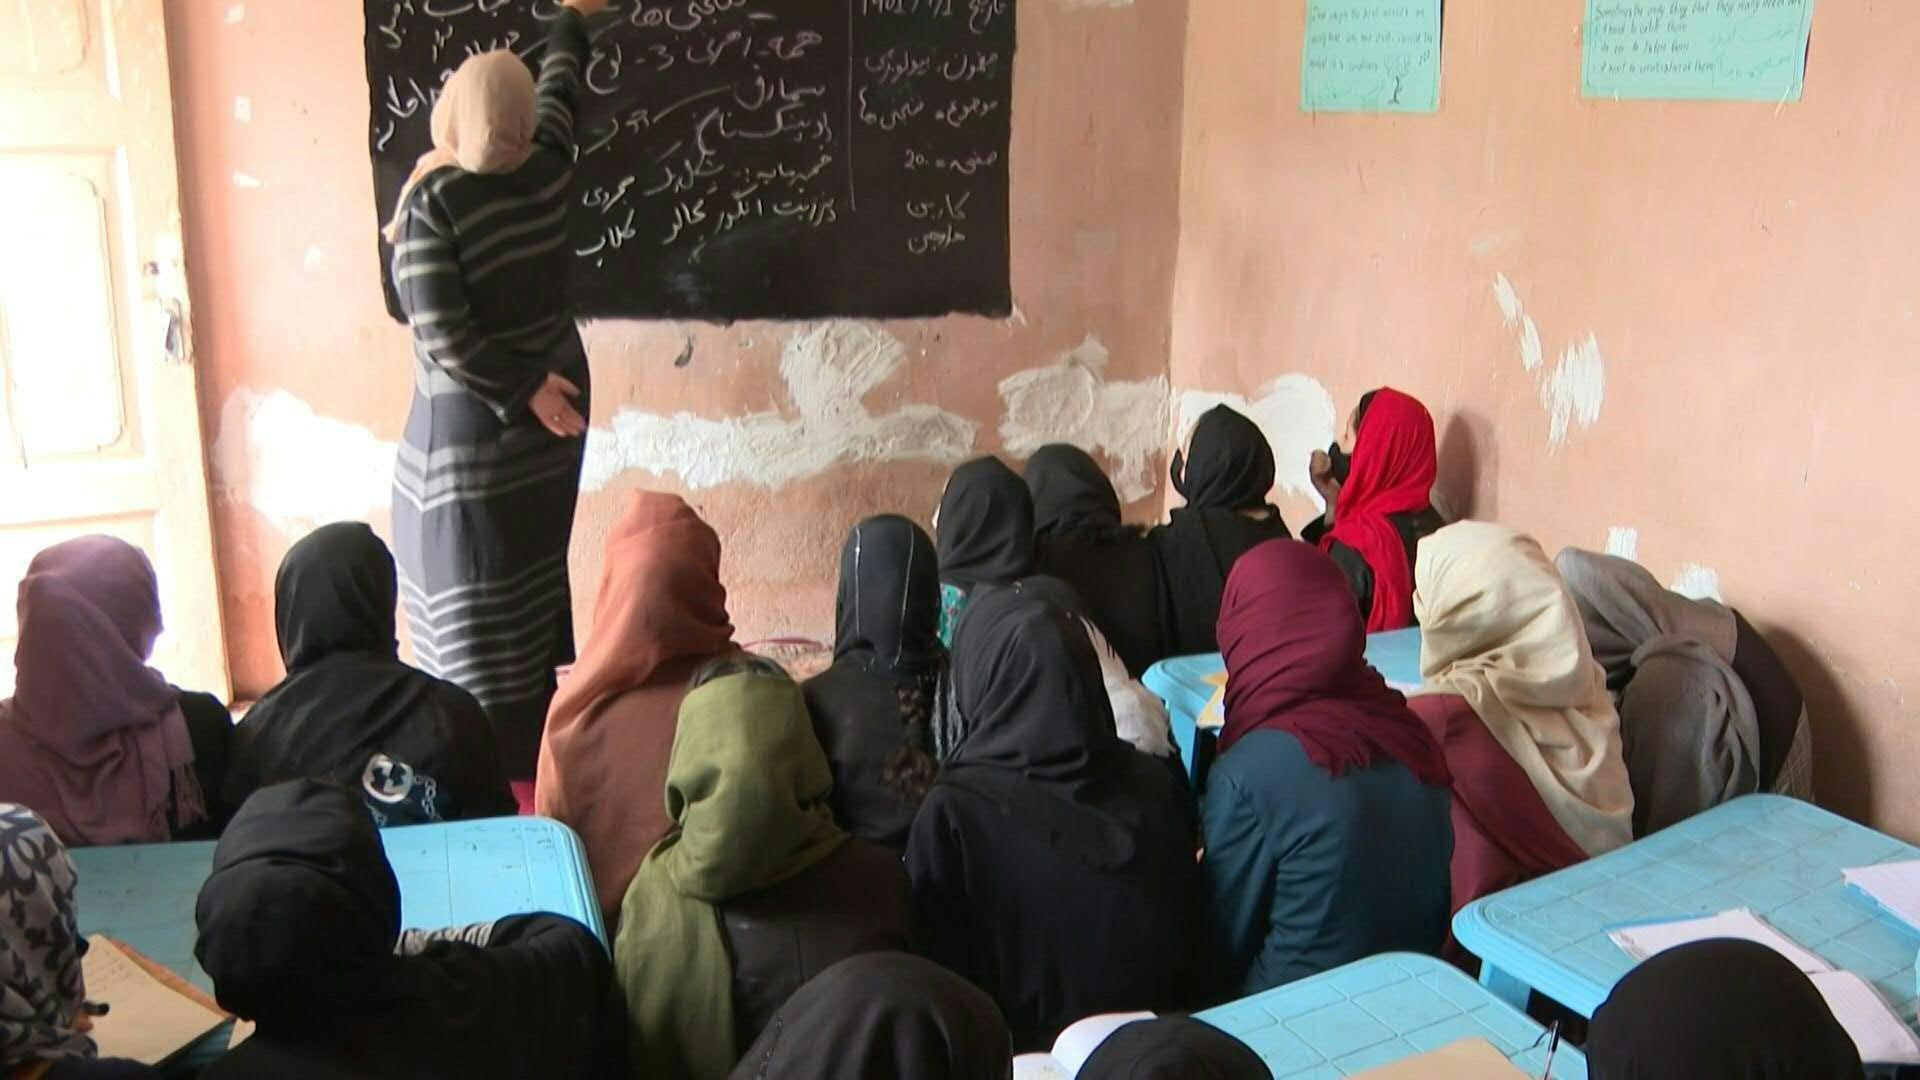 Una escuela de mujeres clandestina en Afganistán.